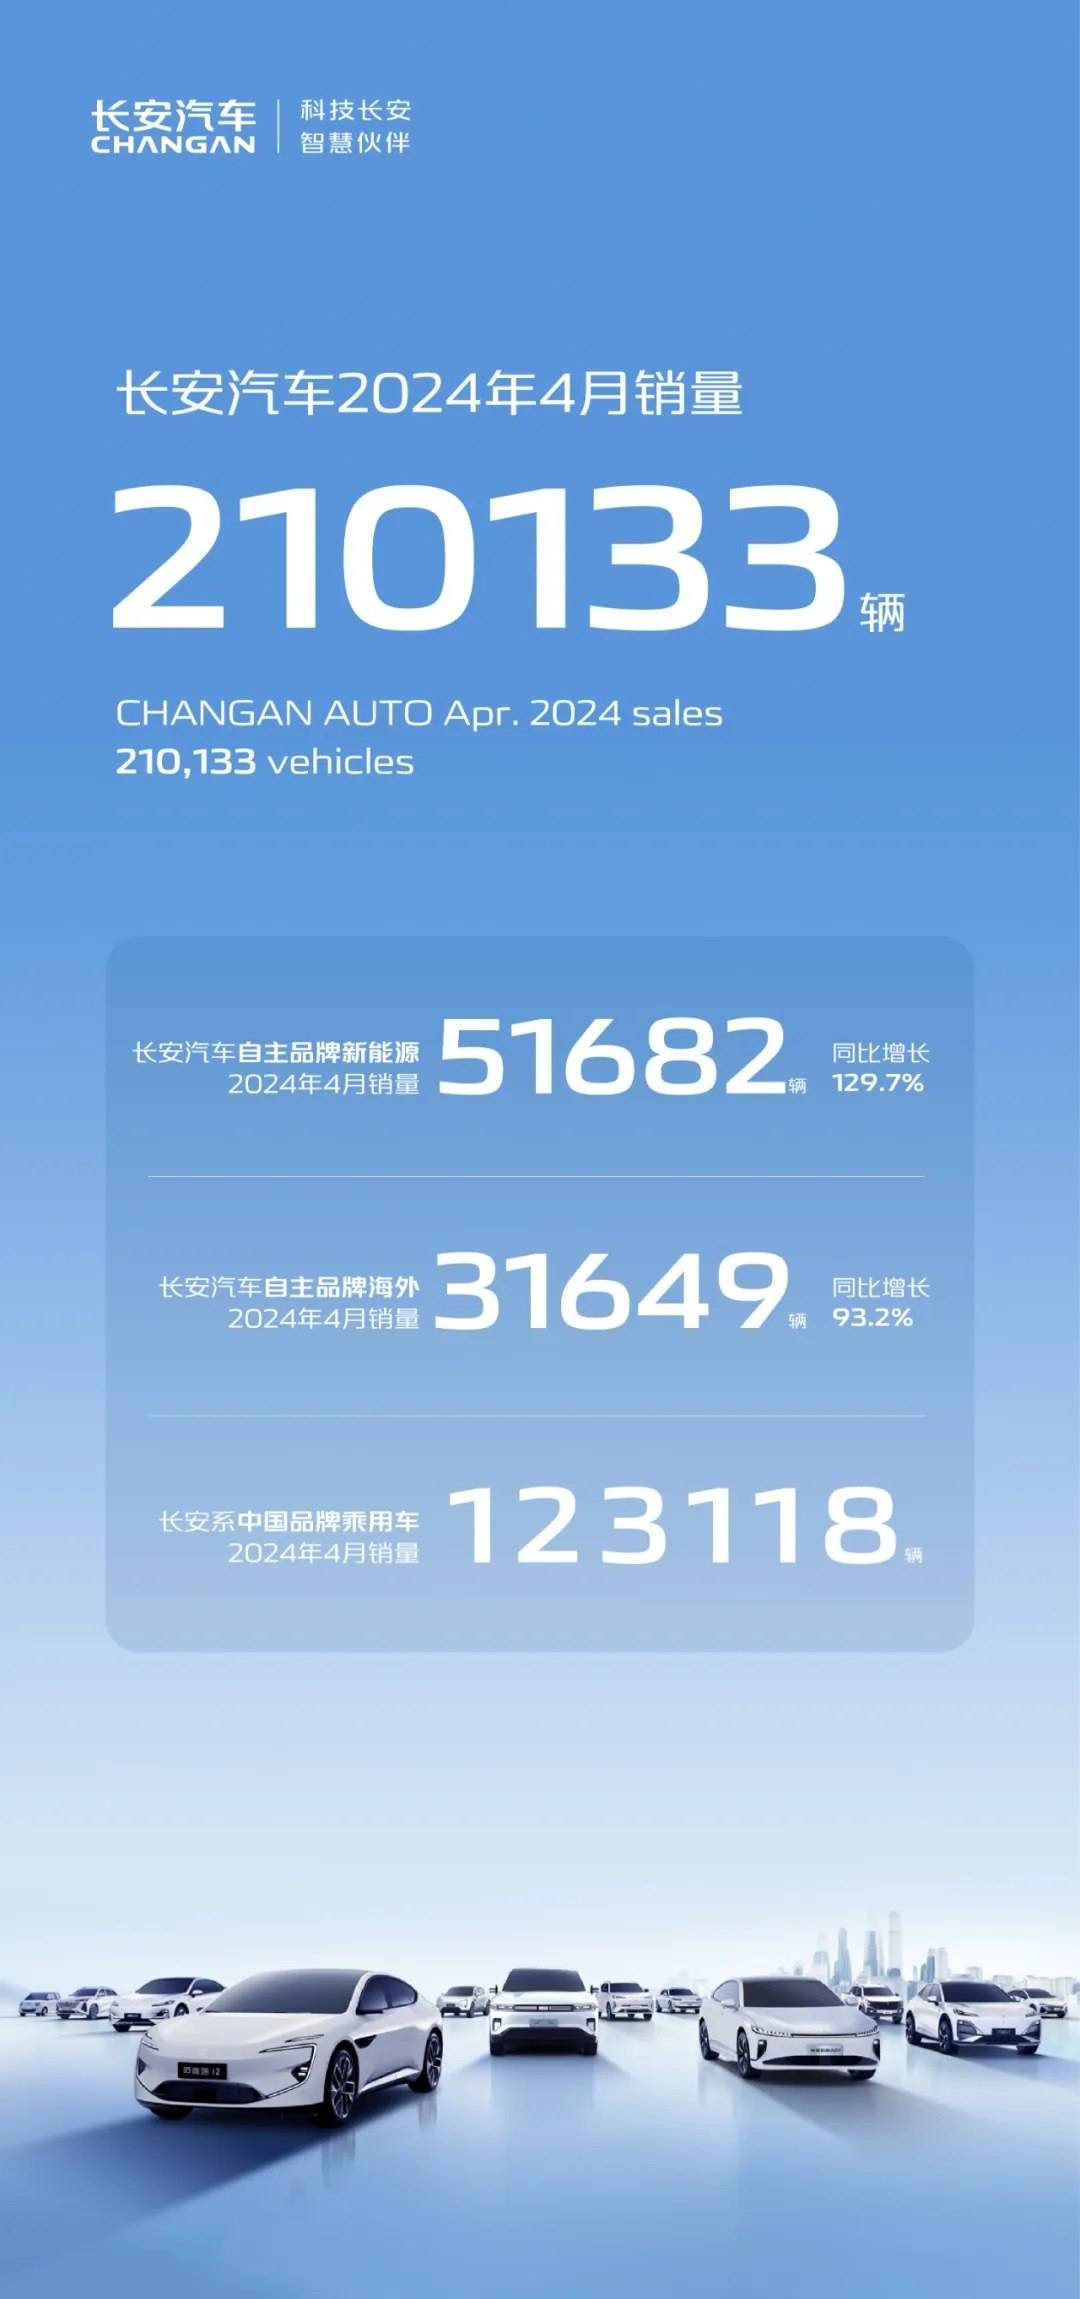 168赛车全球快讯 | 长安汽车4月销量210133辆 同比增长15.47%